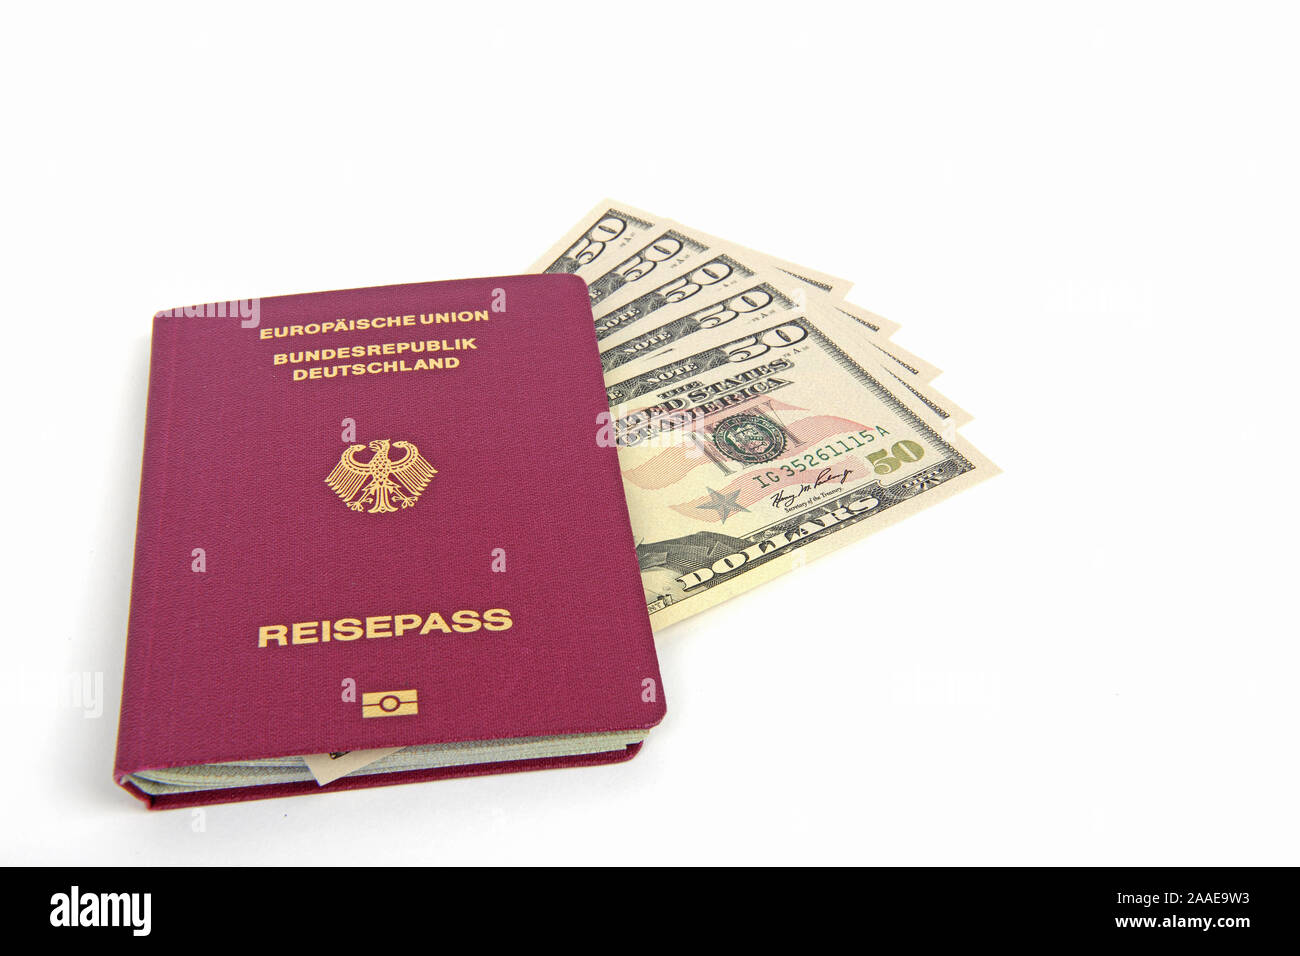 mehrere 50 Dollarscheine, Reisepass Bundesrepublik Deutschland, Symbolbild Reiseplanung Stock Photo